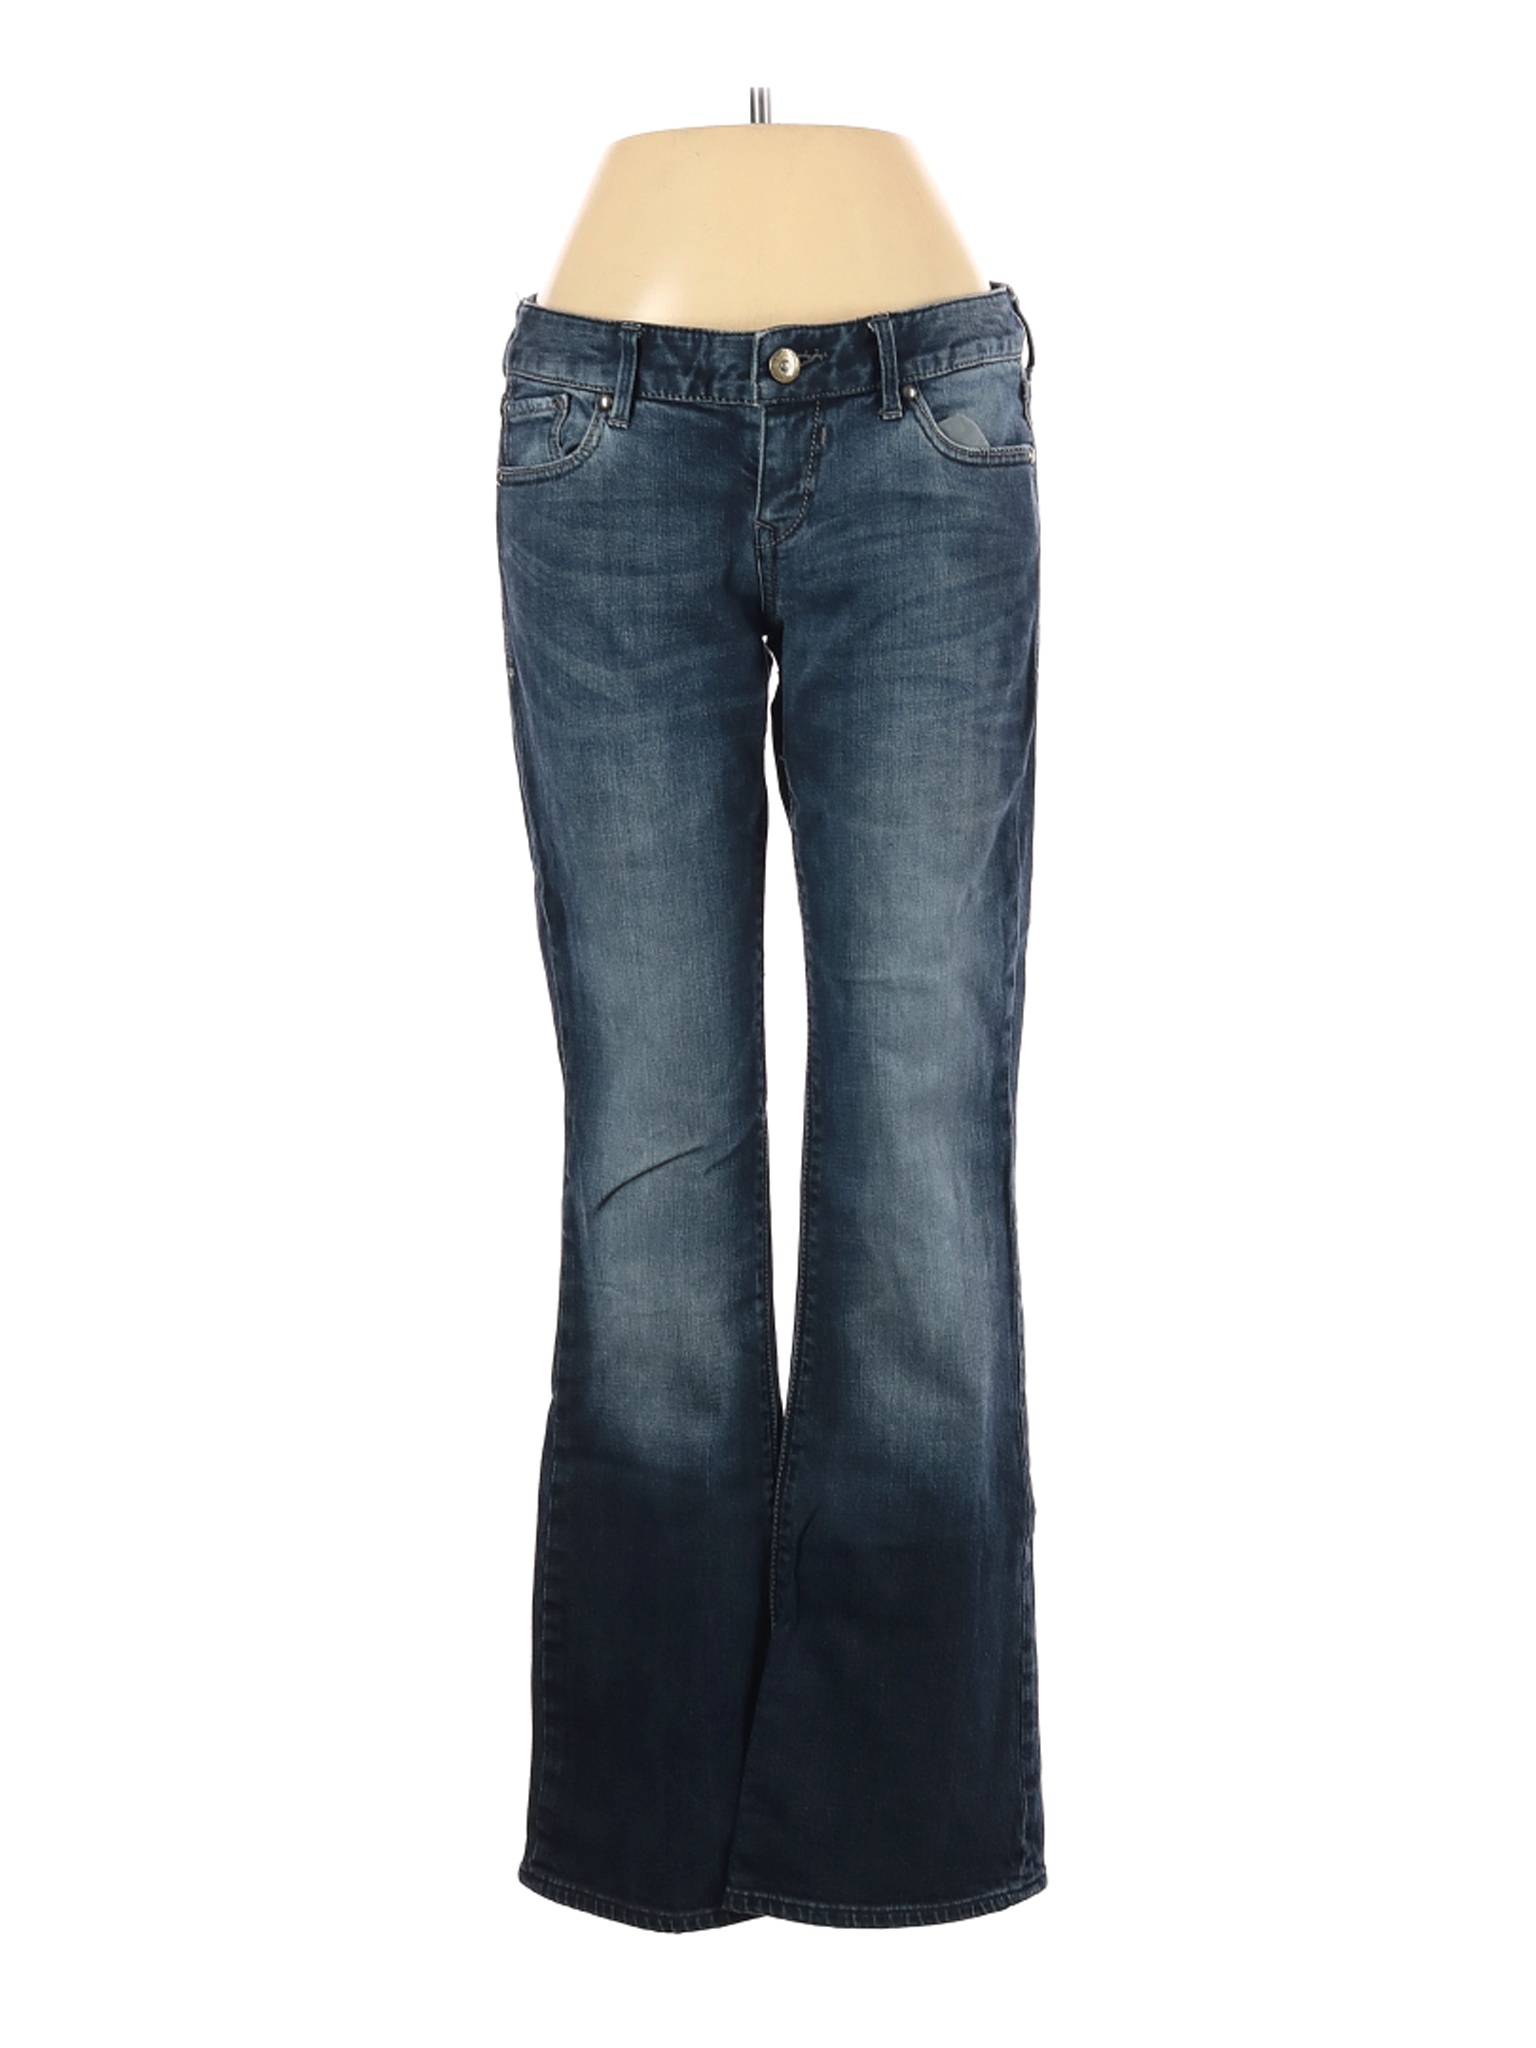 Express Women Blue Jeans 2 | eBay